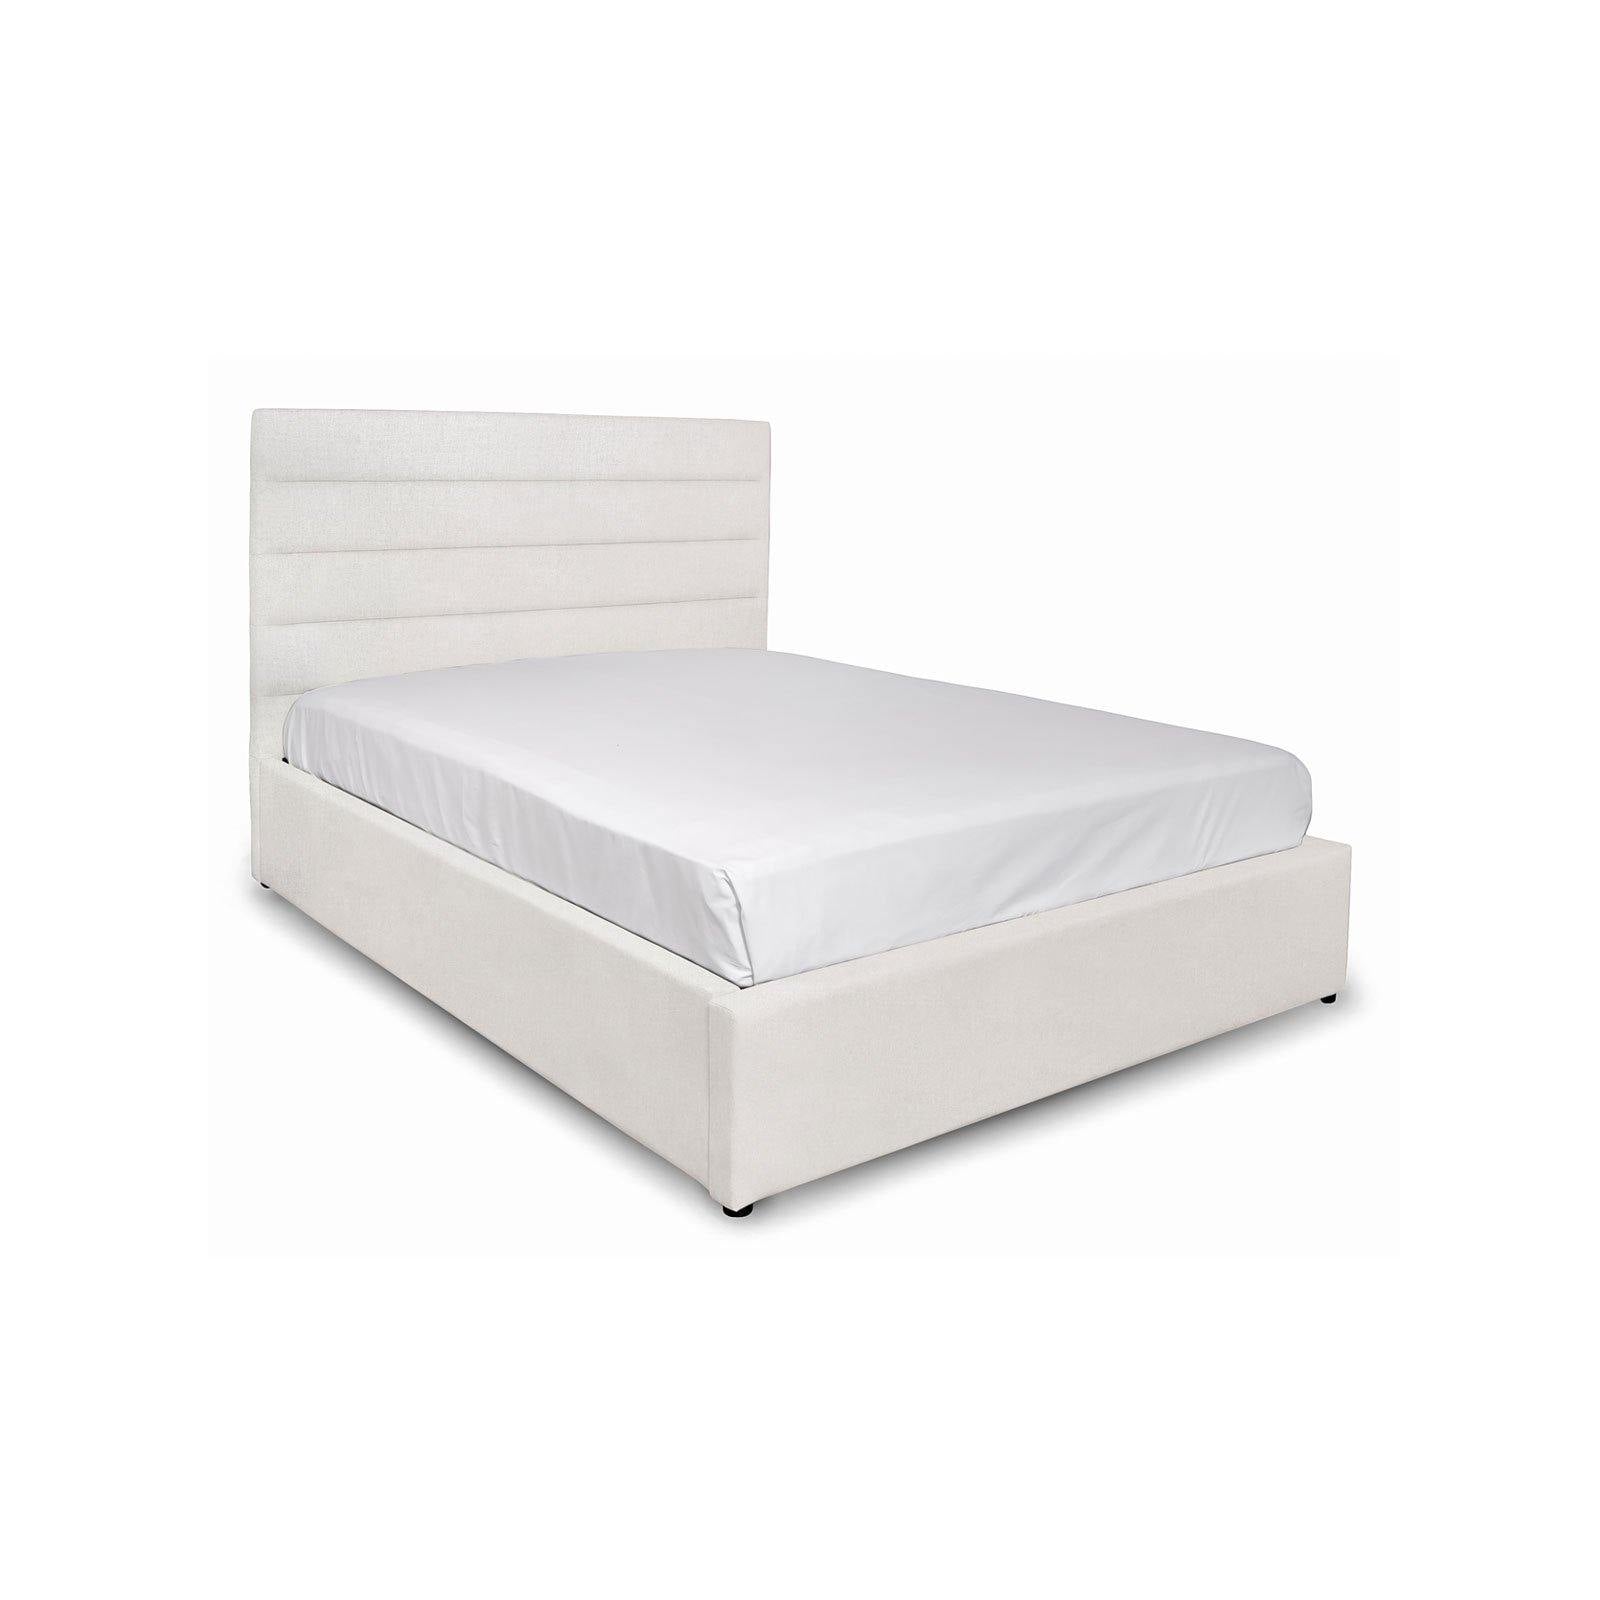 Justin Bed, Cream - Reimagine Designs - bed, new